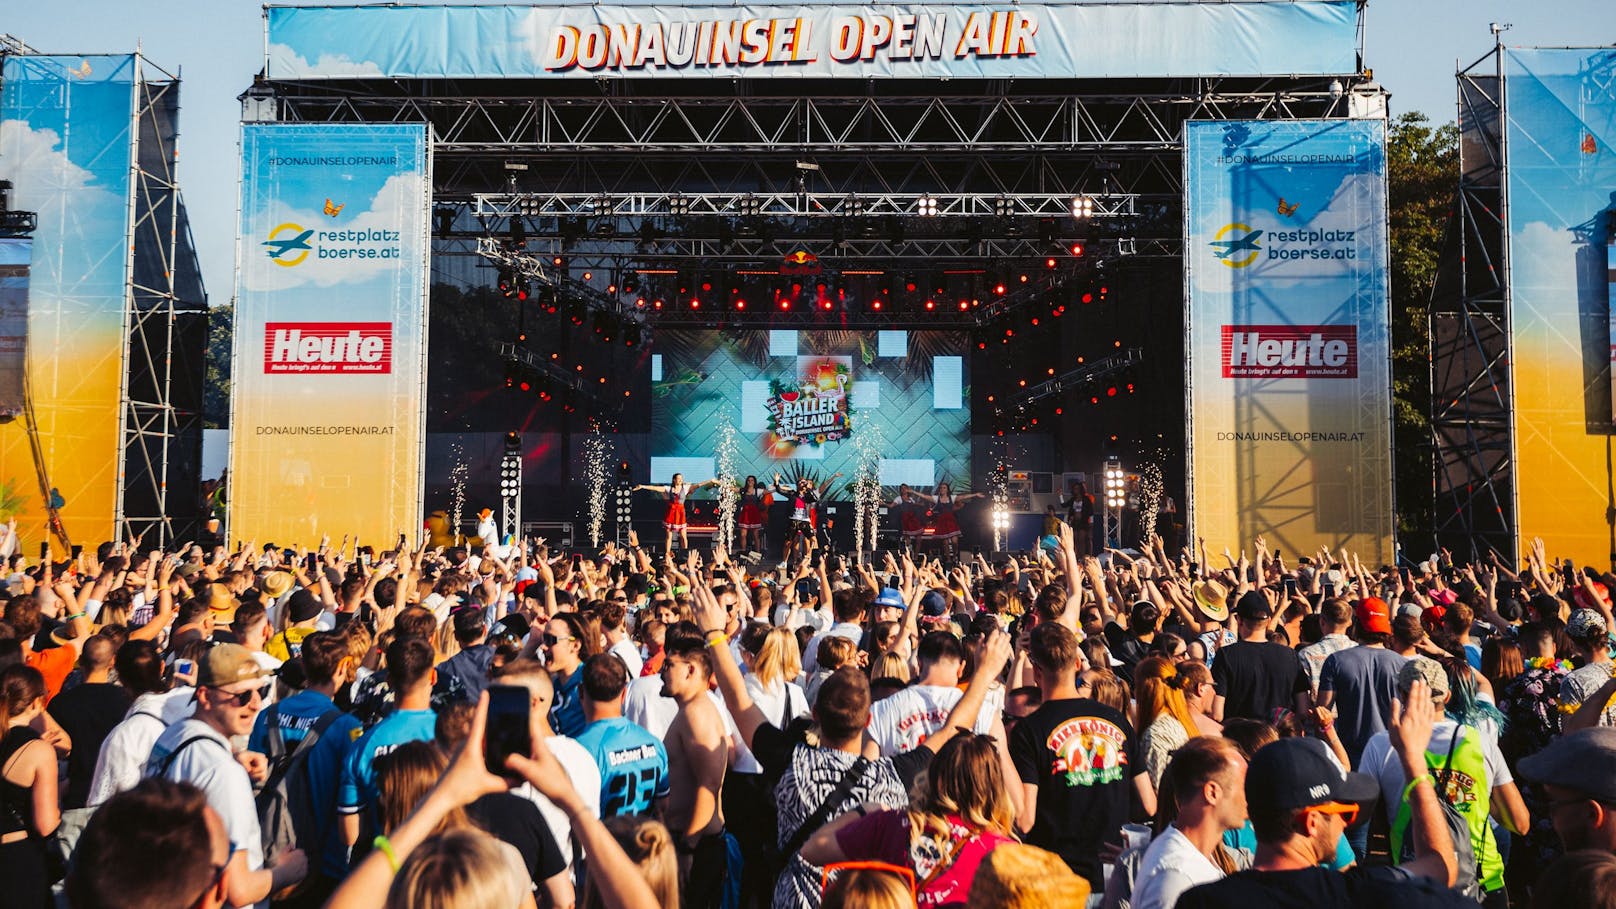 Die heimischen Festivallovers kommen dieses Jahr voll auf ihre Kosten: Von 23. bis 26. Mai steigt zum zweiten Mal das Donauinsel Open Air.